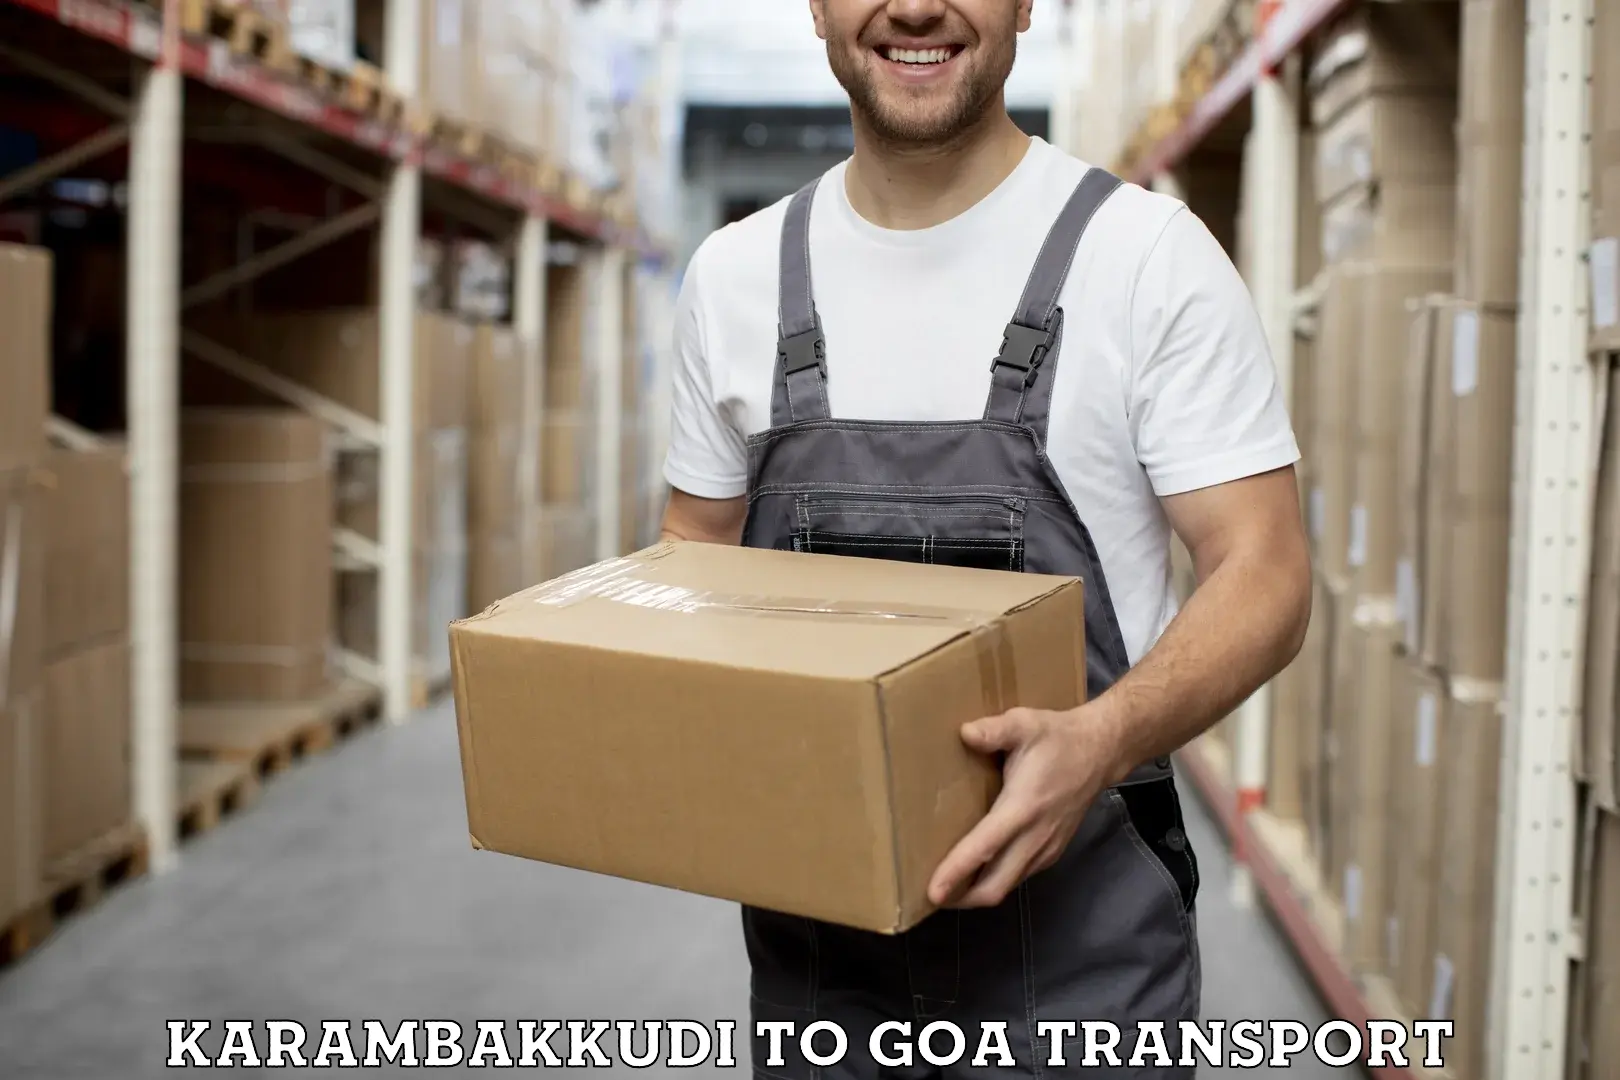 Interstate goods transport Karambakkudi to Panjim